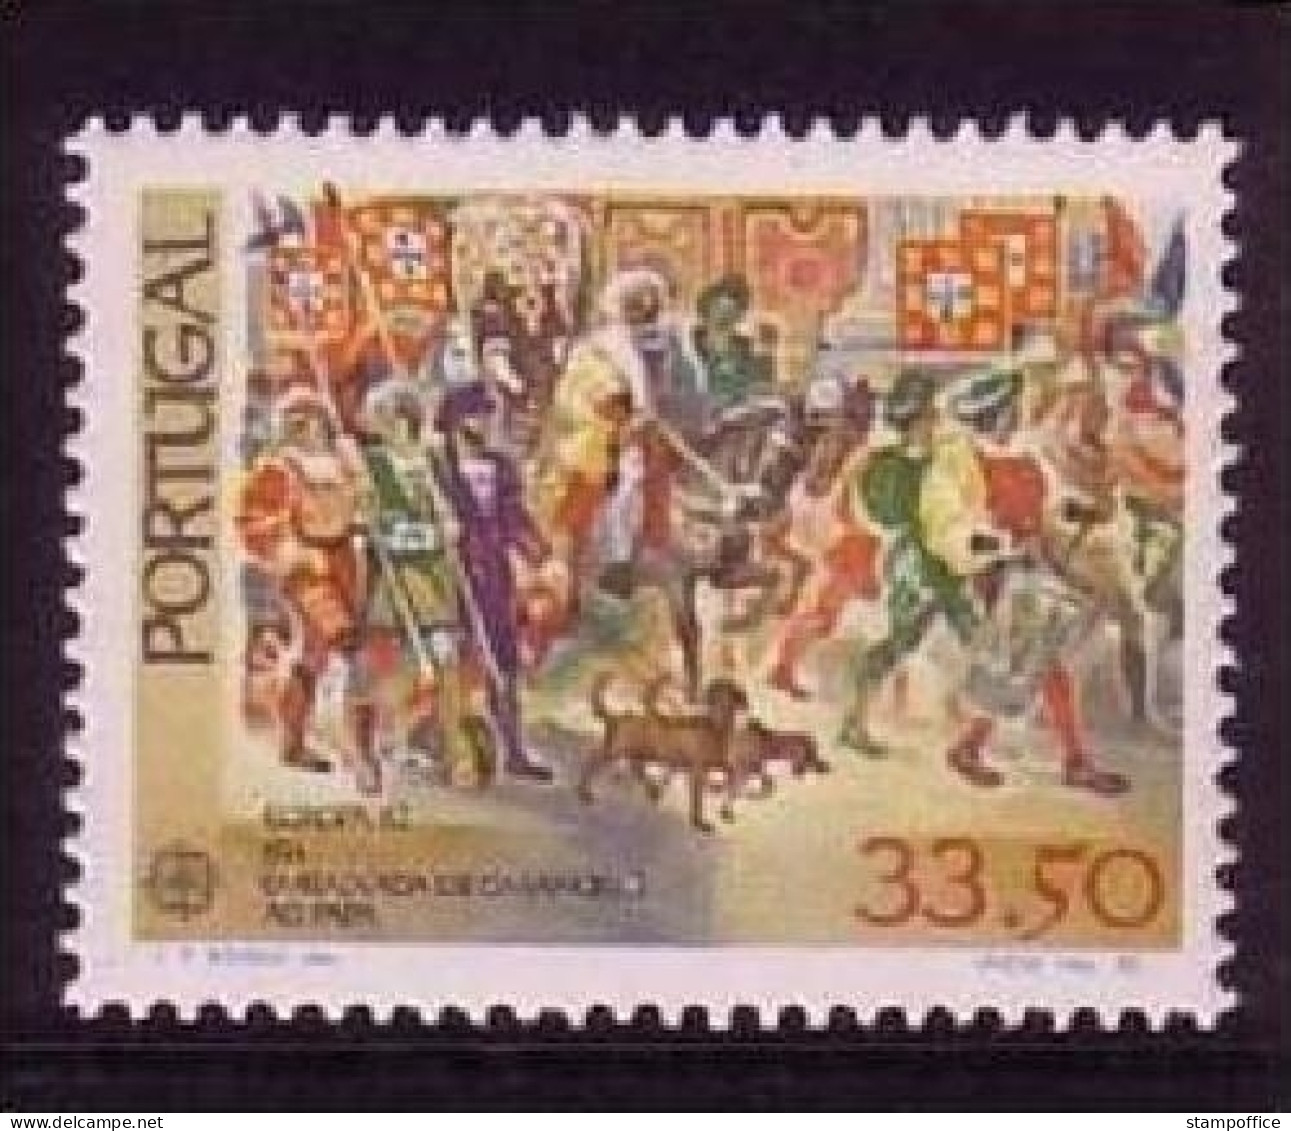 PORTUGAL MI-NR. 1564 POSTFRISCH(MINT) EUROPA 1982 - HISTORISCHE EREIGNISSE - 1982